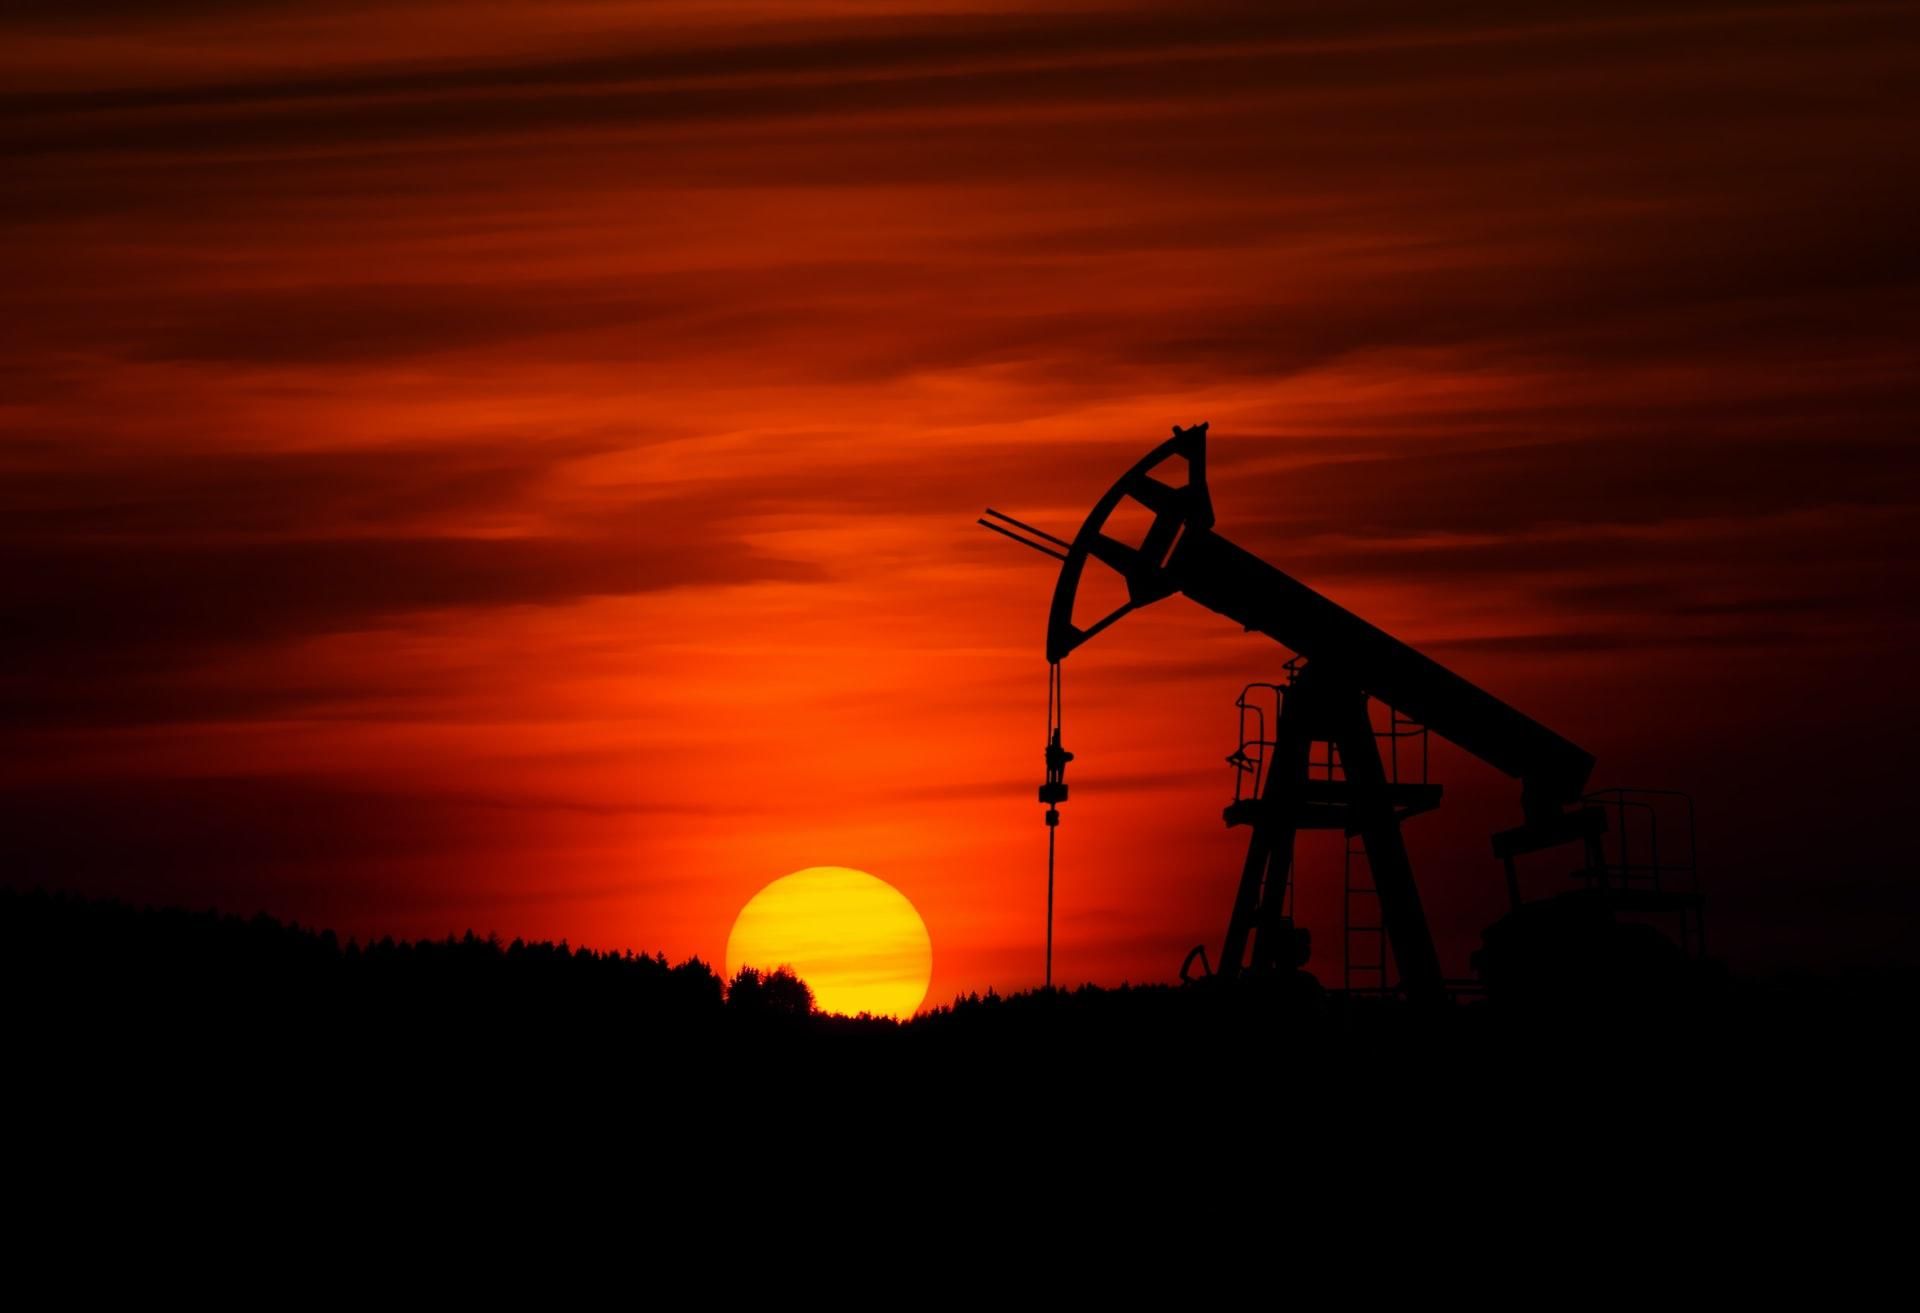 Канада запретила импорт нефтепродуктов из России